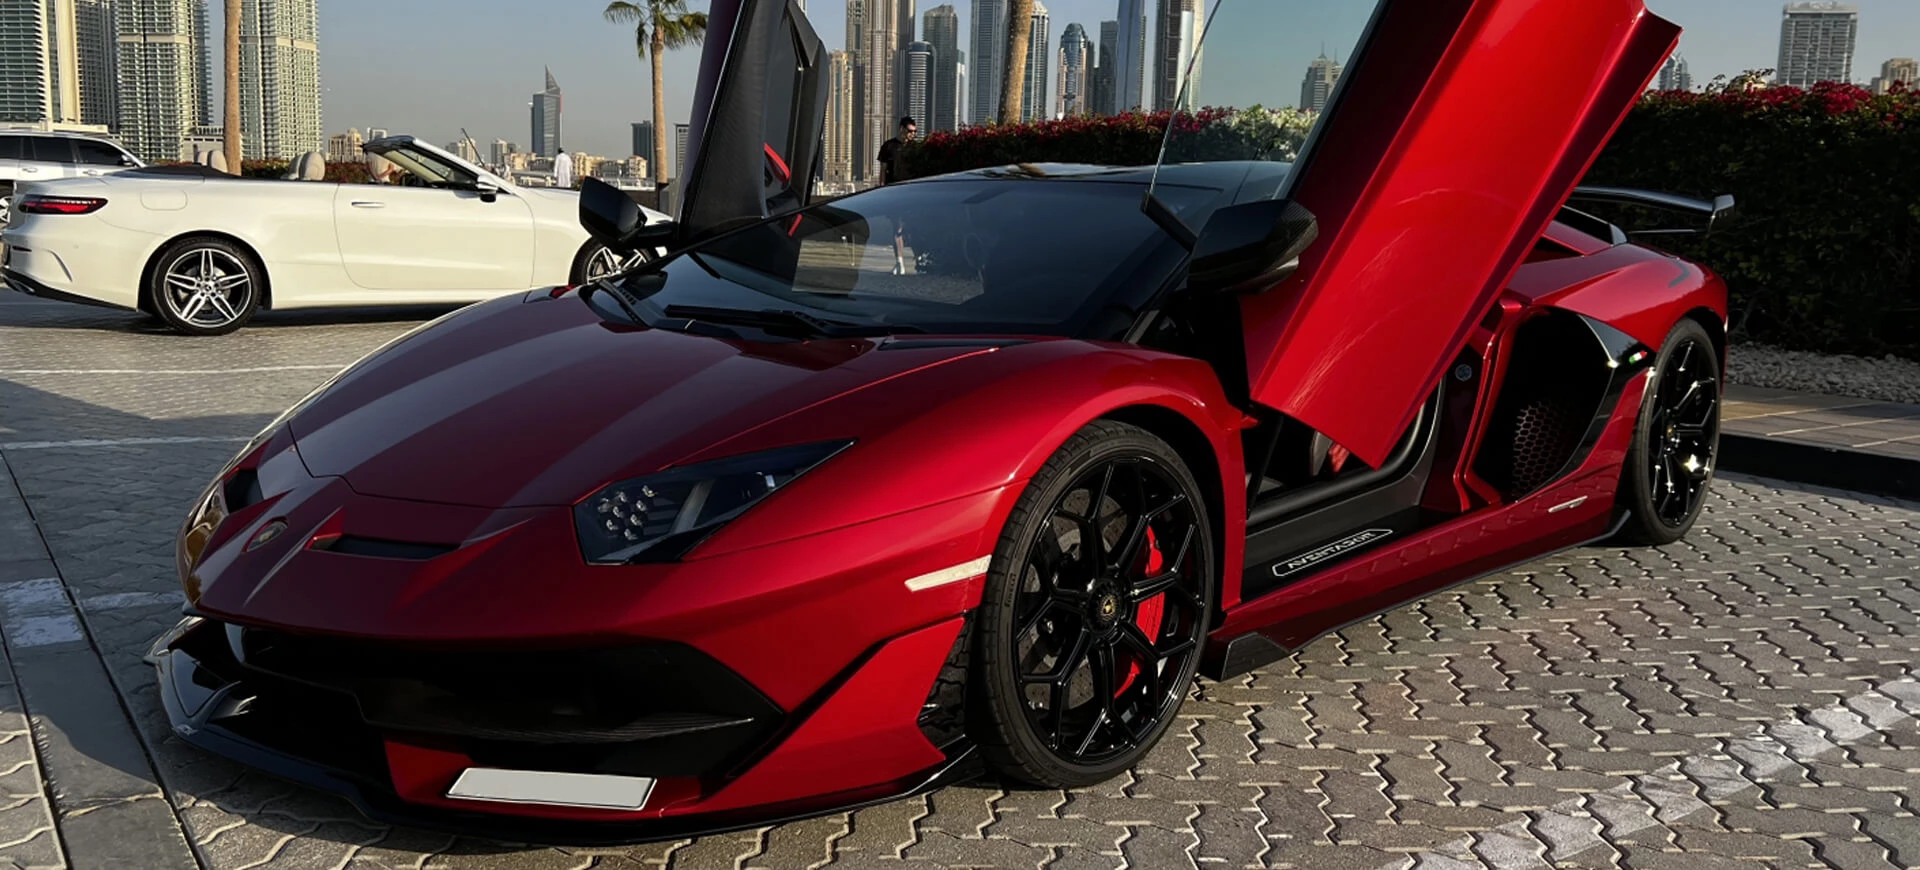 Hyr Lamborghini Aventador i Dubai